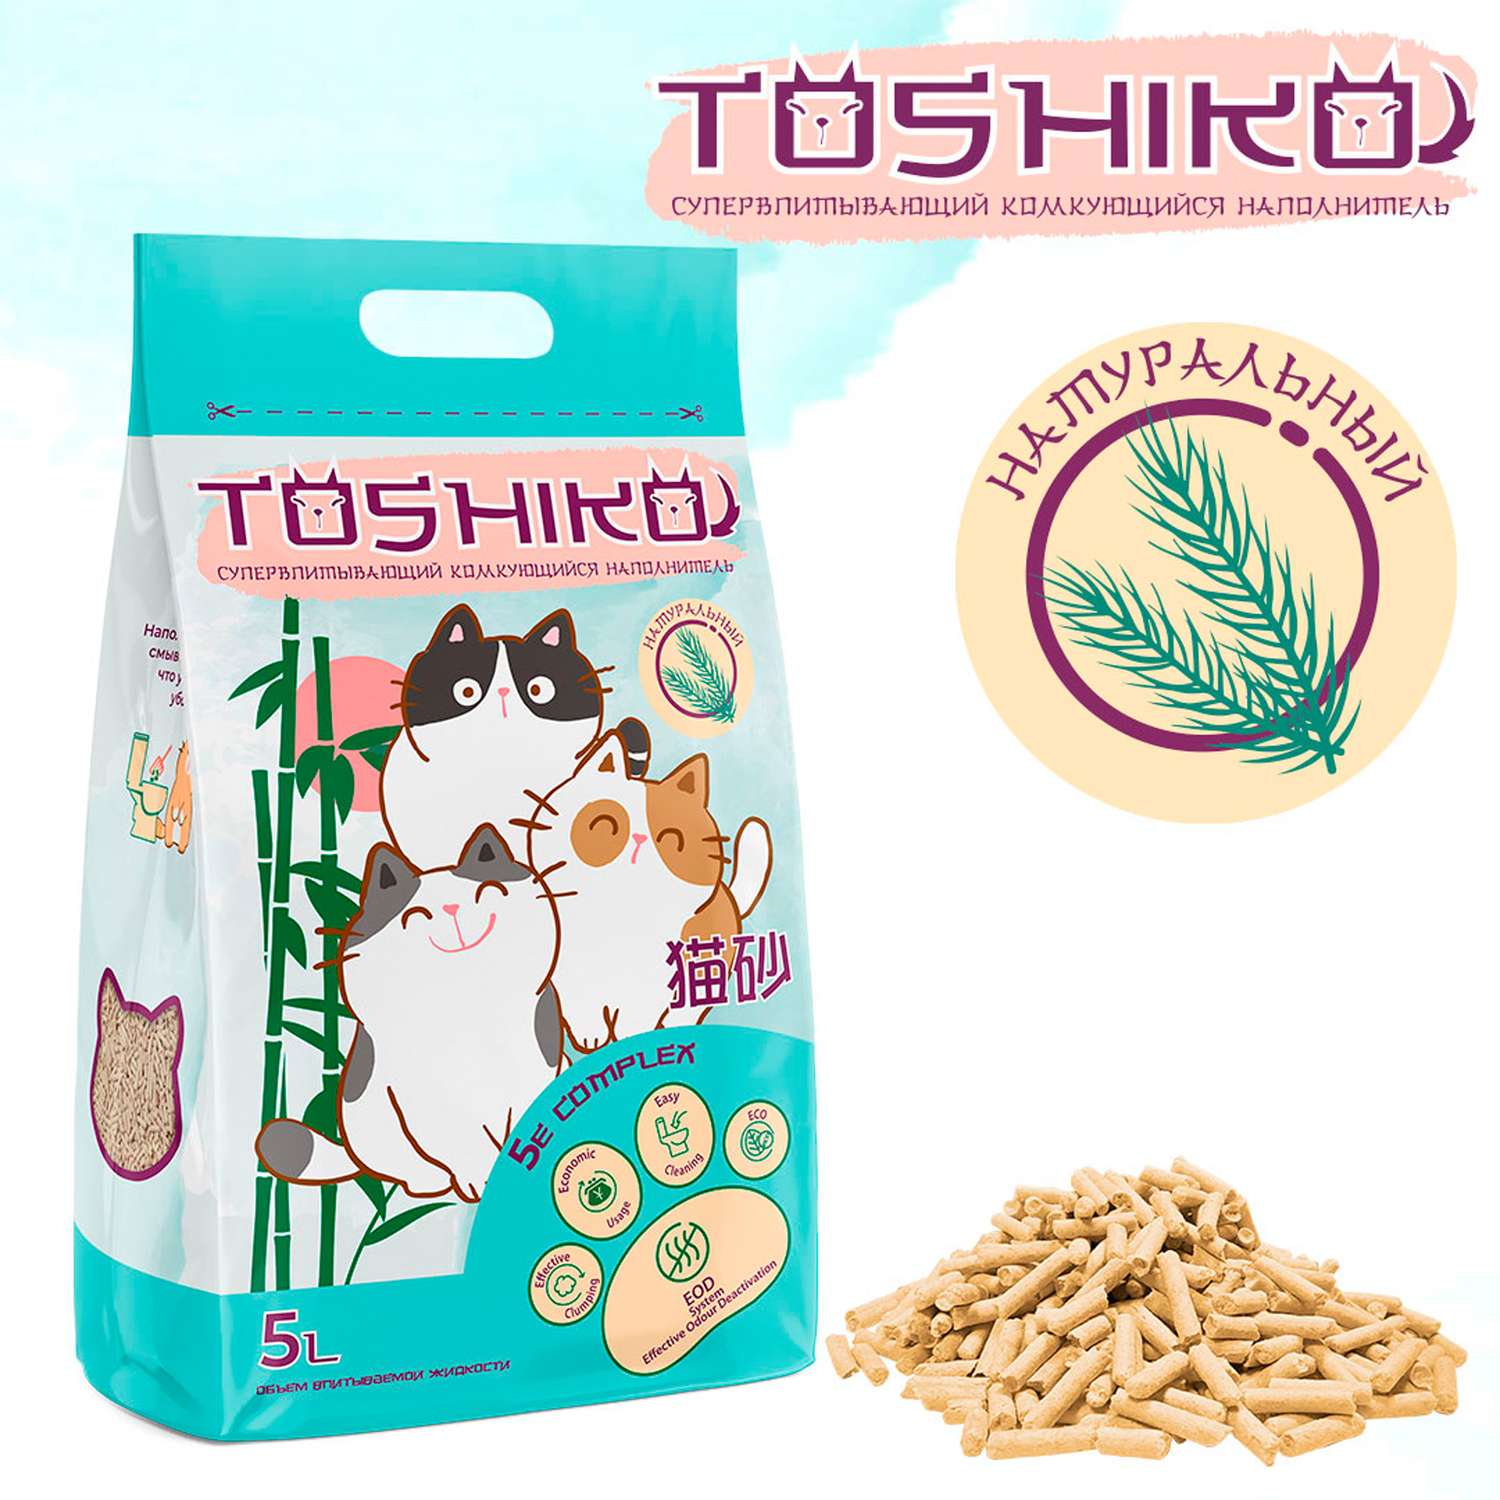 Наполнитель для кошек Toshiko комкующийся древесный натуральный без запаха 5л - фото 3